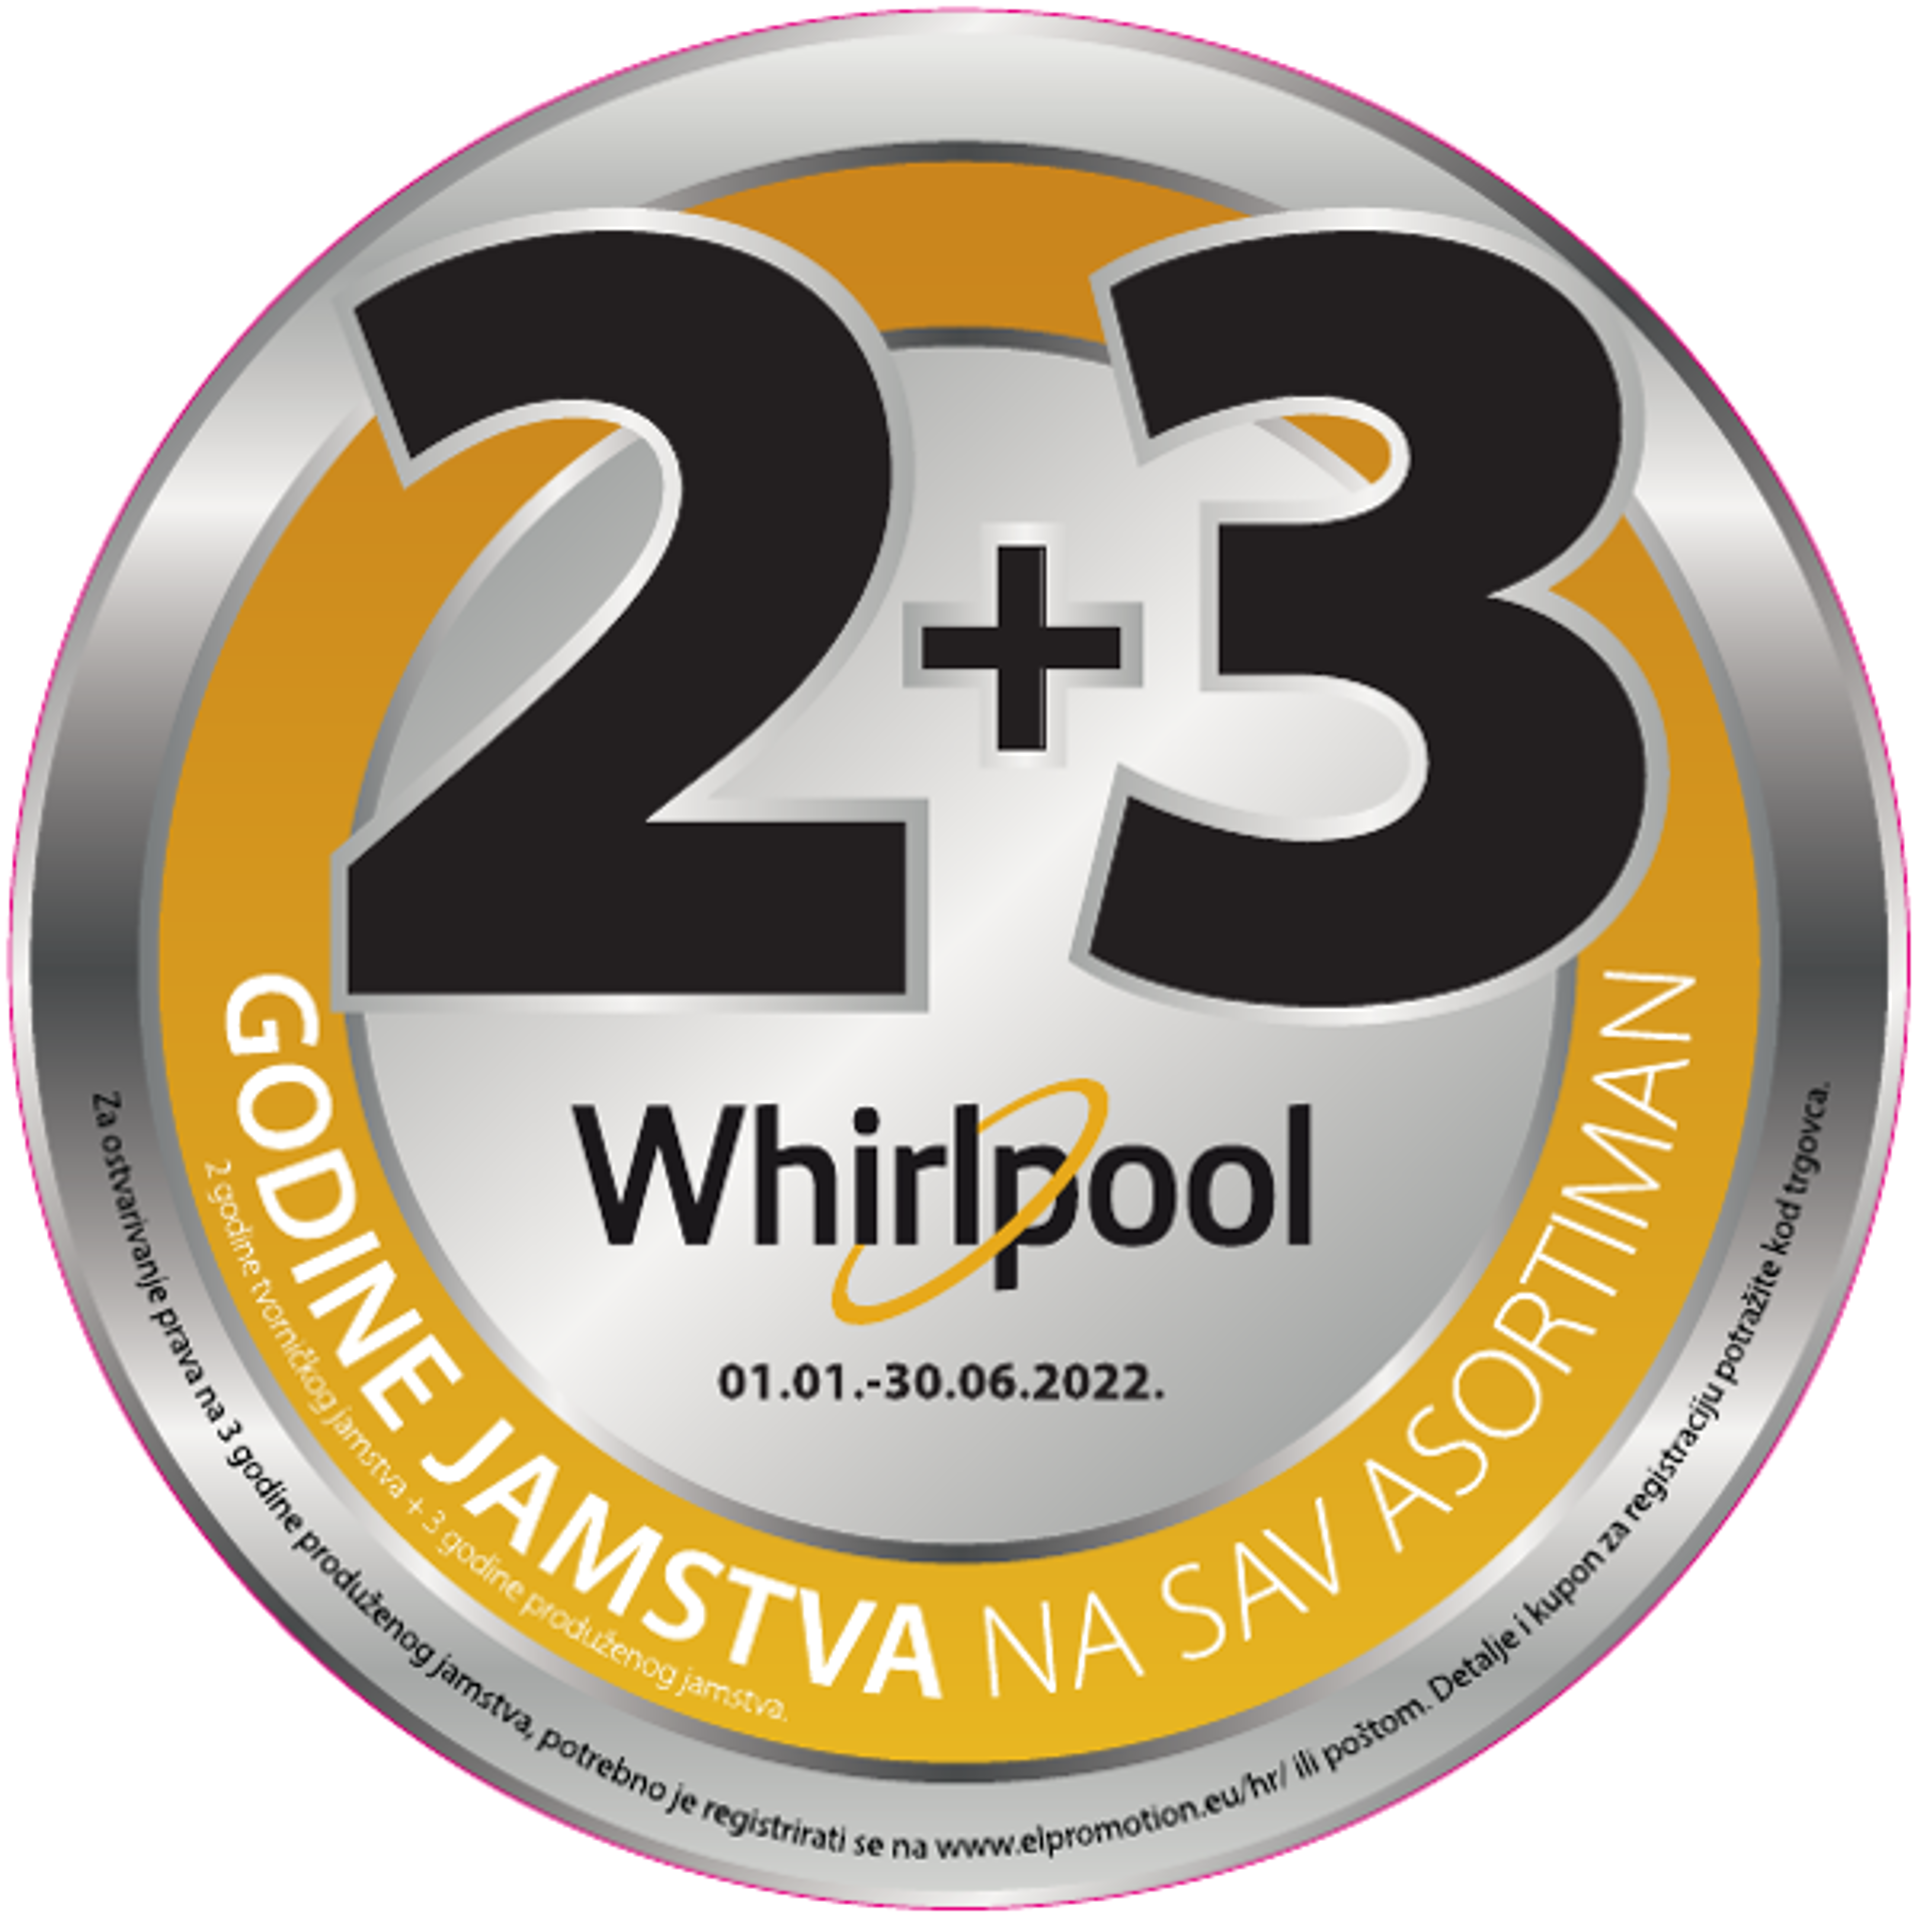 Whirlpool 2+3 godine produženog jamstva